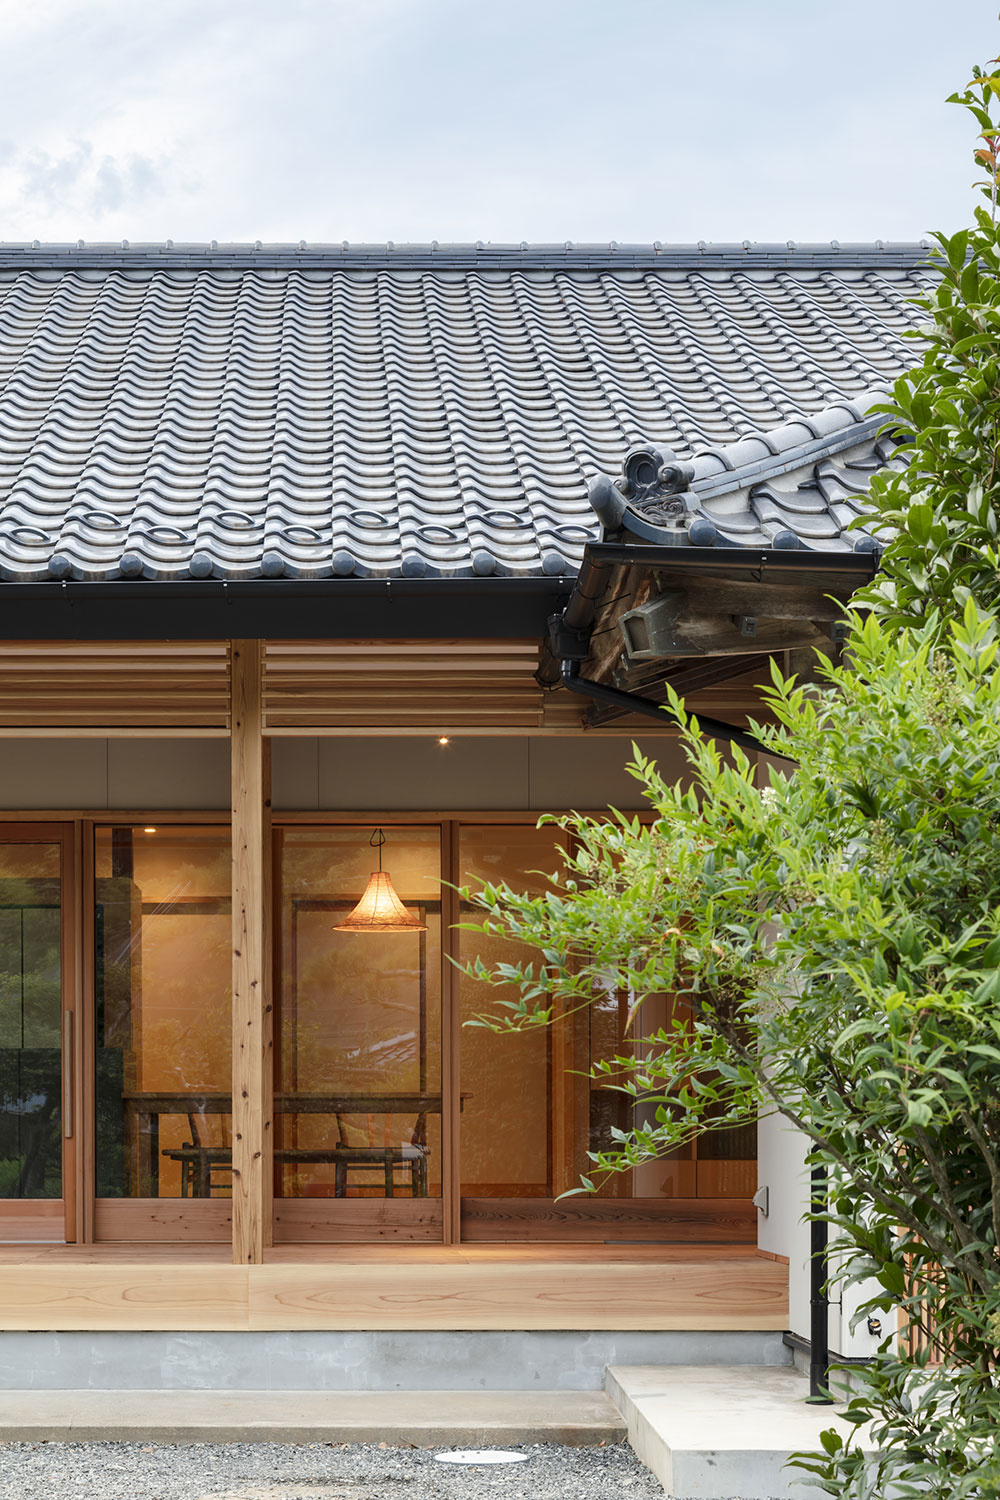 
Rekonštrukcia na japonský štýl: Zrušili izby a vytvorili priestrannú terasu